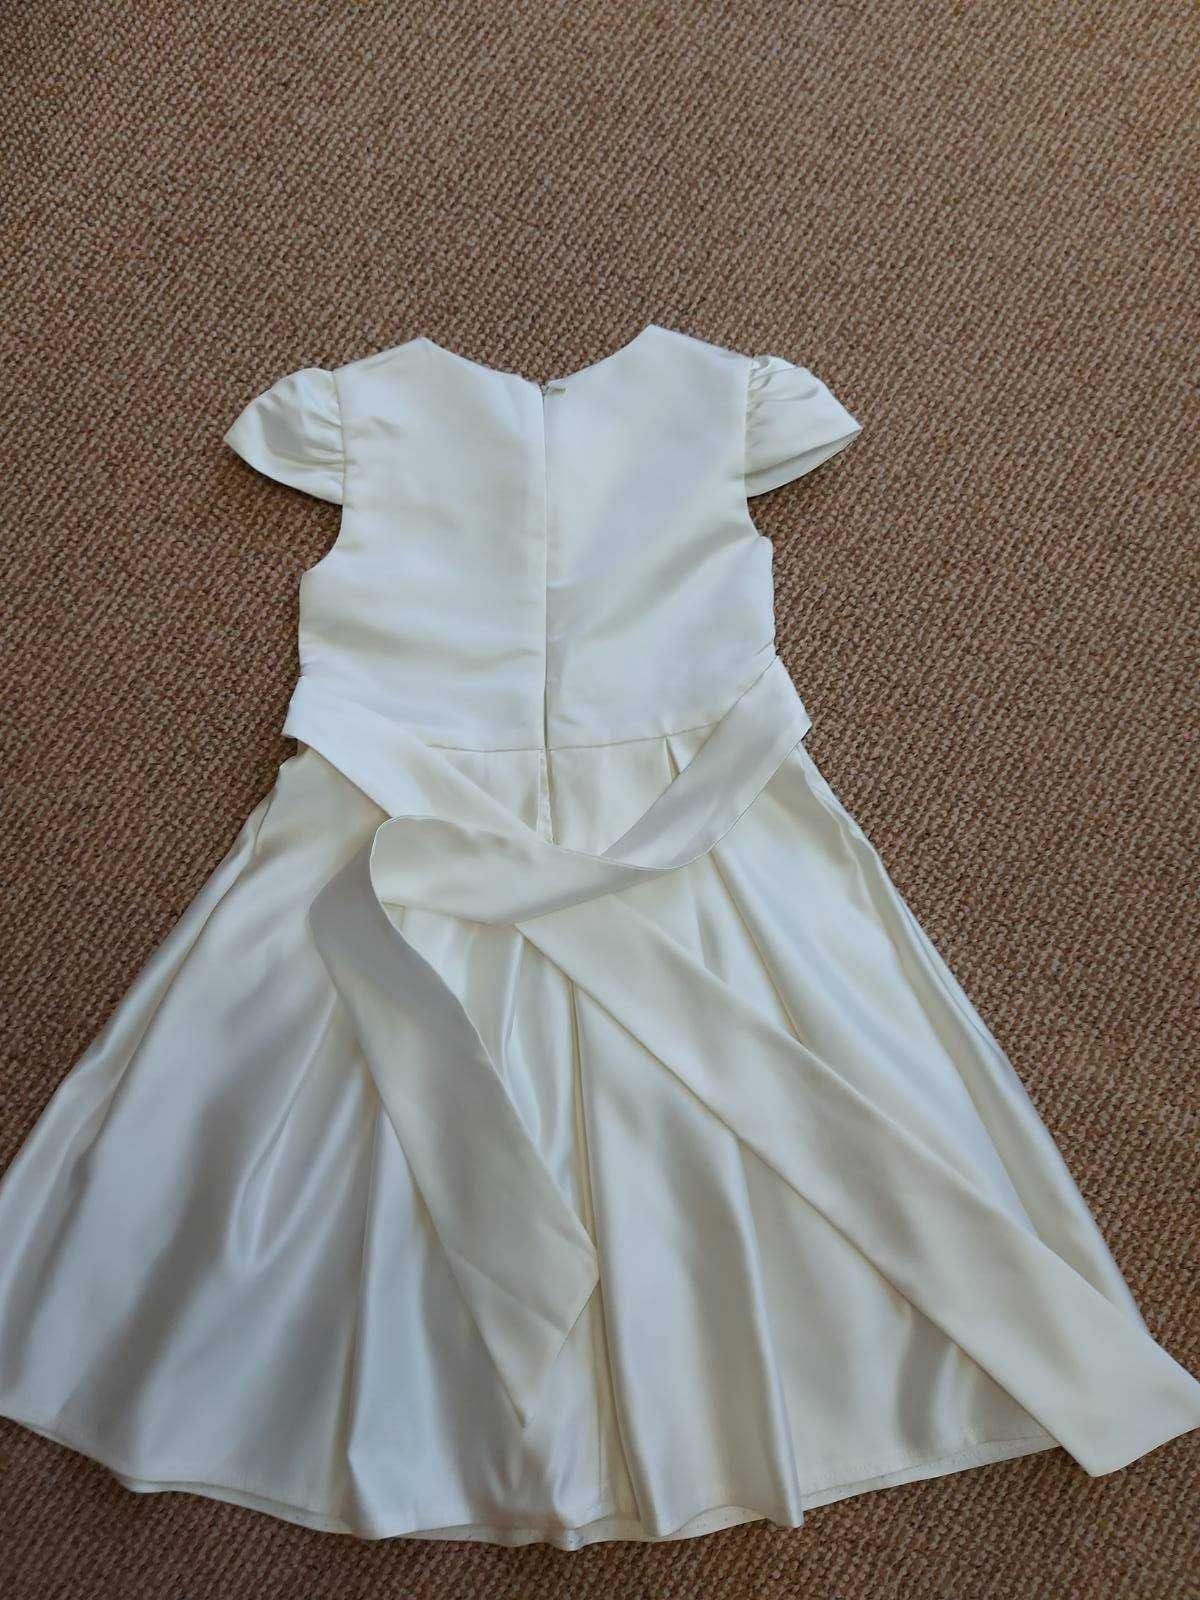 Продам нарядное платье Viani для девочки 7-8лет.